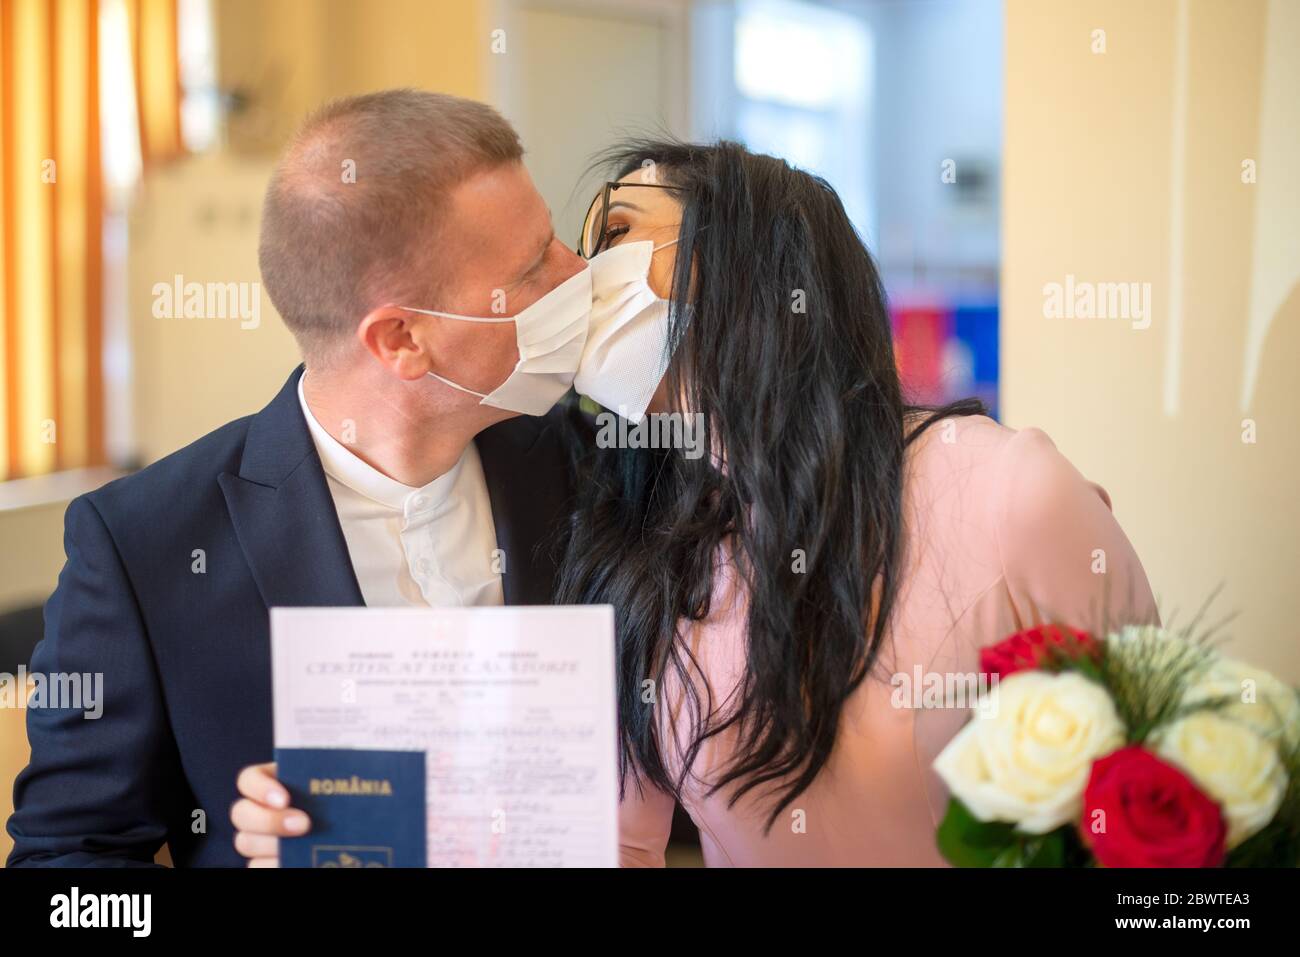 Galati, Rumänien - 10. April 2020: Verliebtes Paar gerade in einer Kovid-Pandemie verheiratet. Küssen mit Maske auf dem Gesicht und Hochzeitsurkunde in den Händen Stockfoto